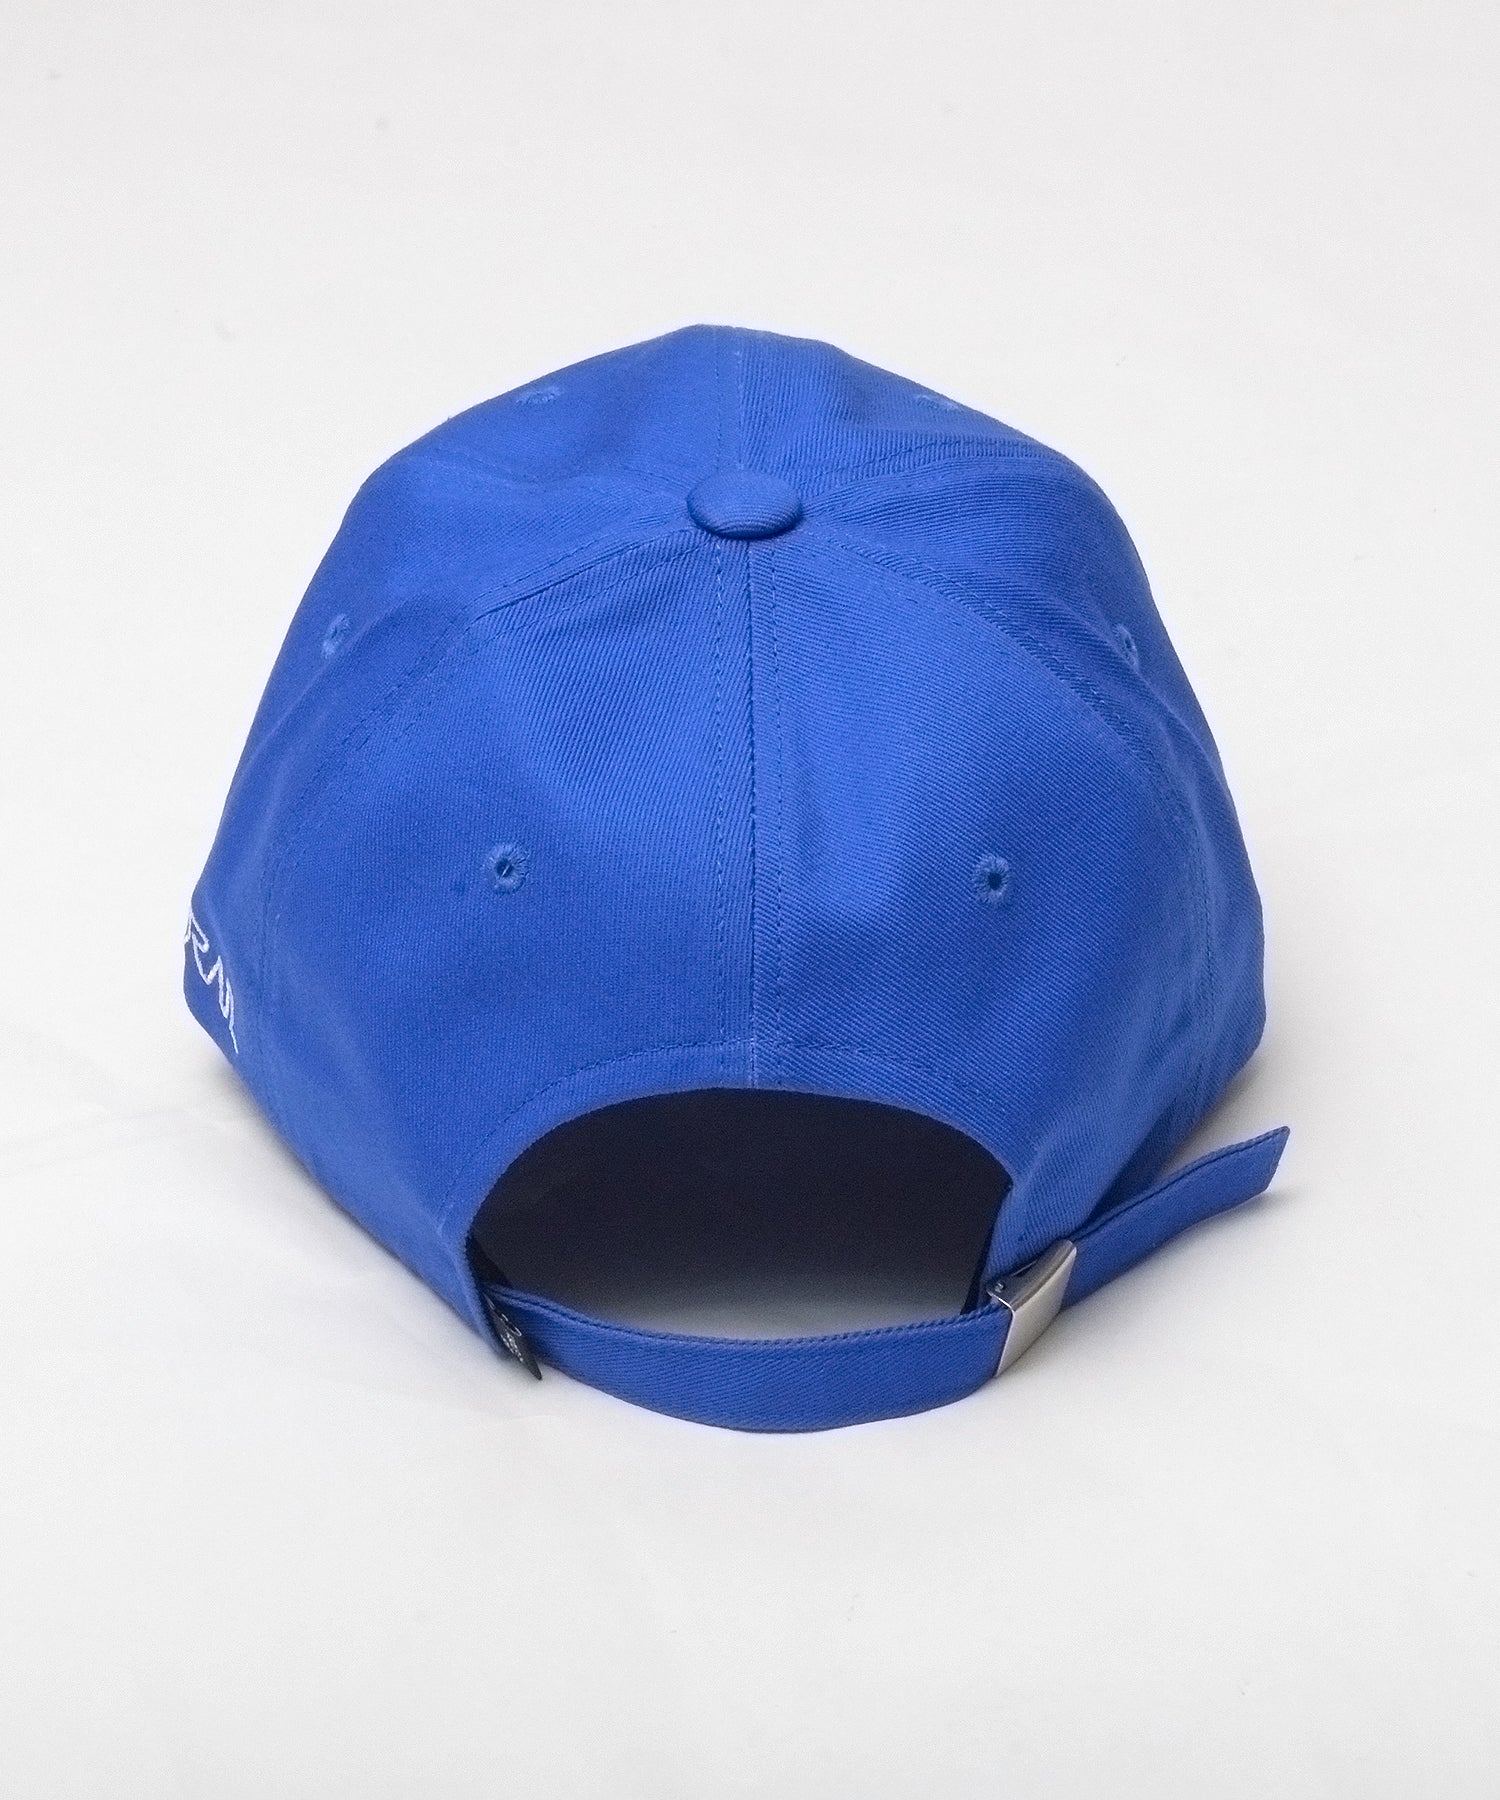 Ball cap